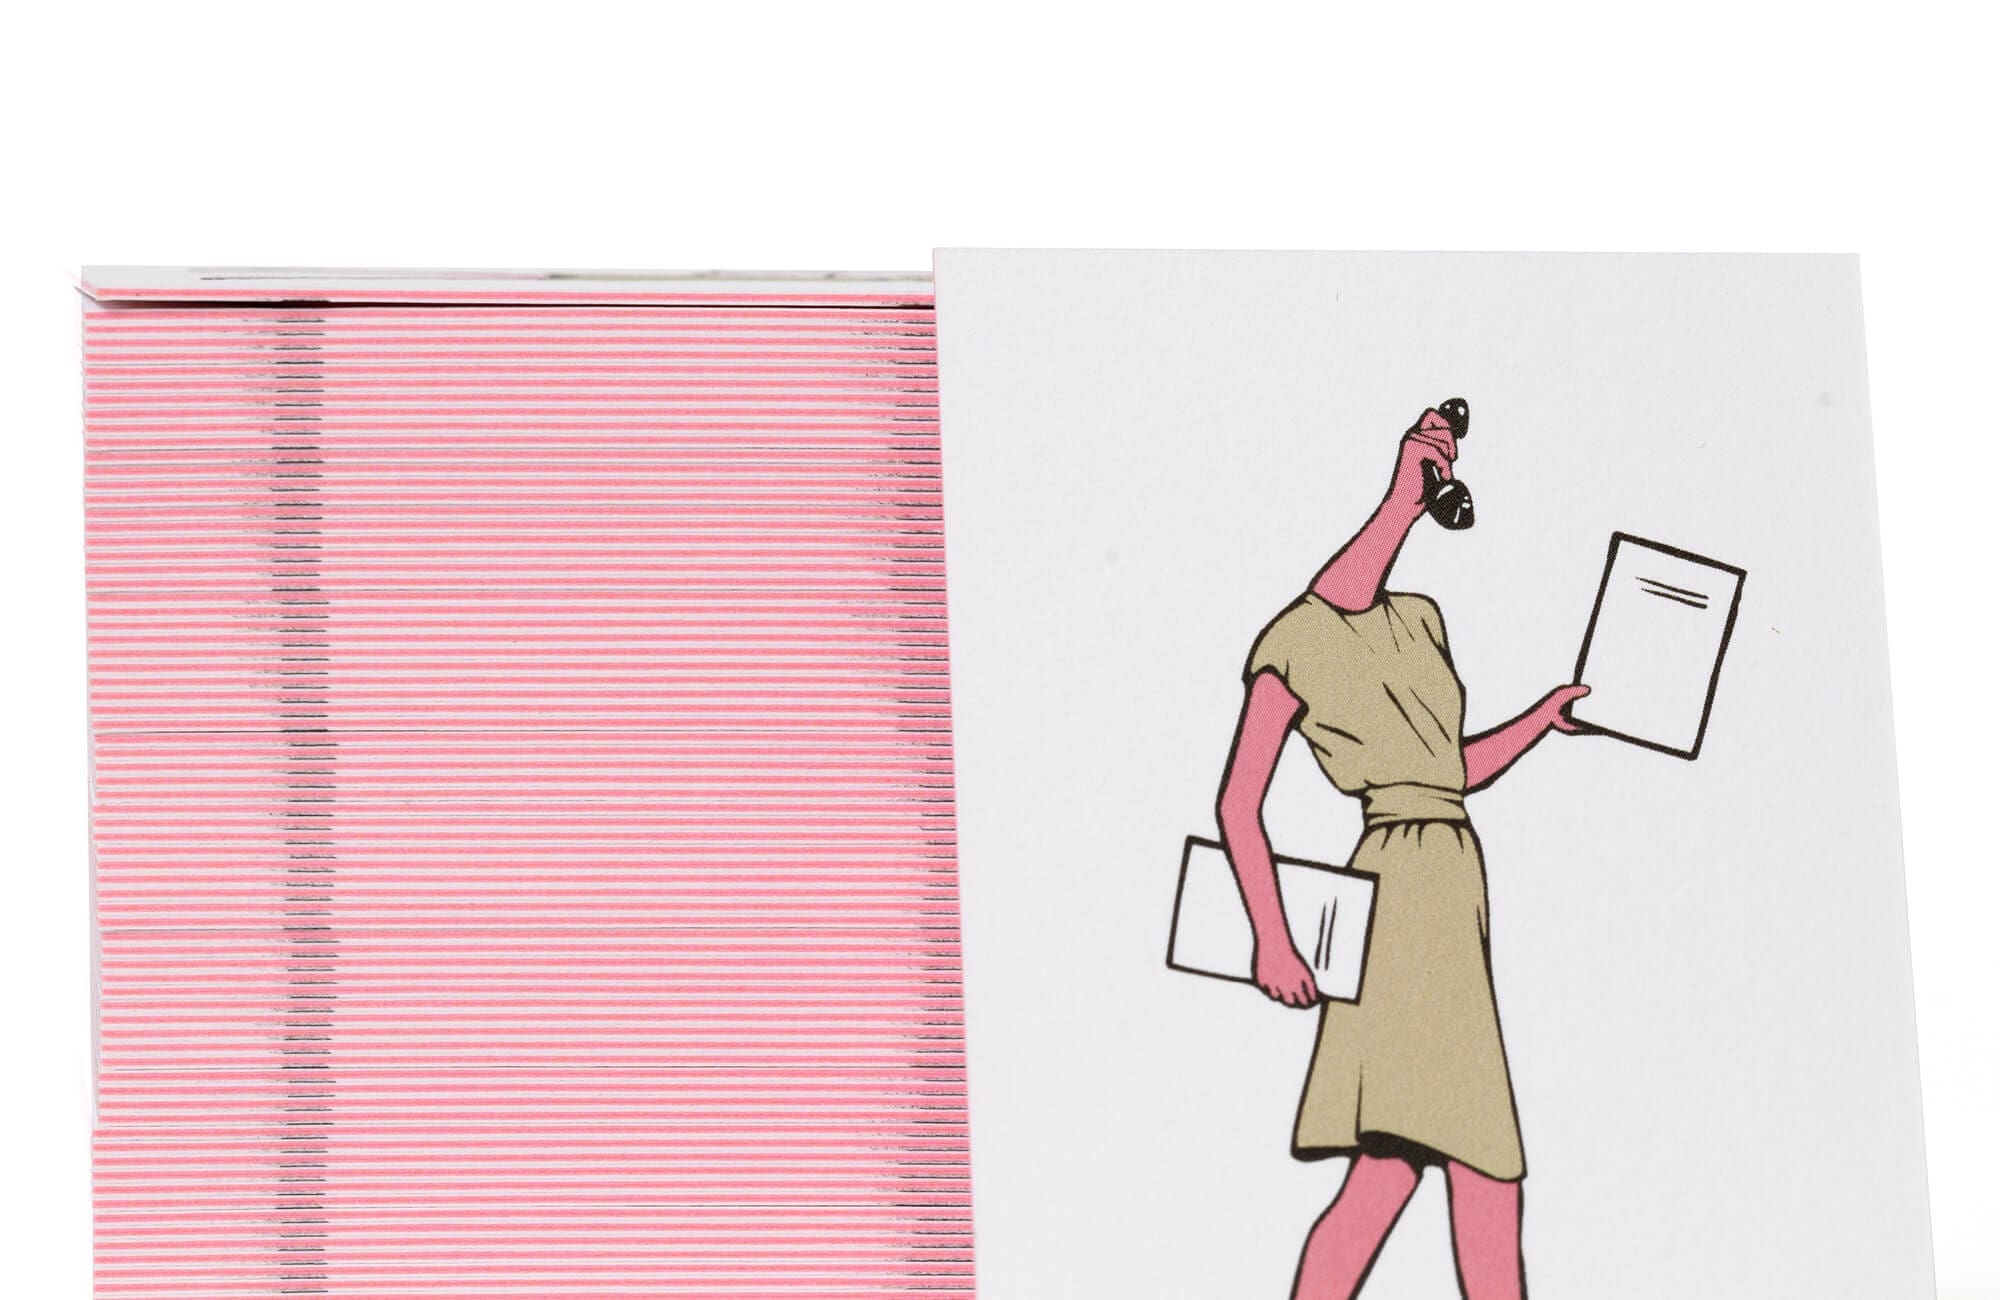 ZOOM sur LA carte de visite pour henya mekki Business woman retro futuriste, une carte epaisse et rigide avec une tranche rose fluo, indemodable signée Ichetkar.